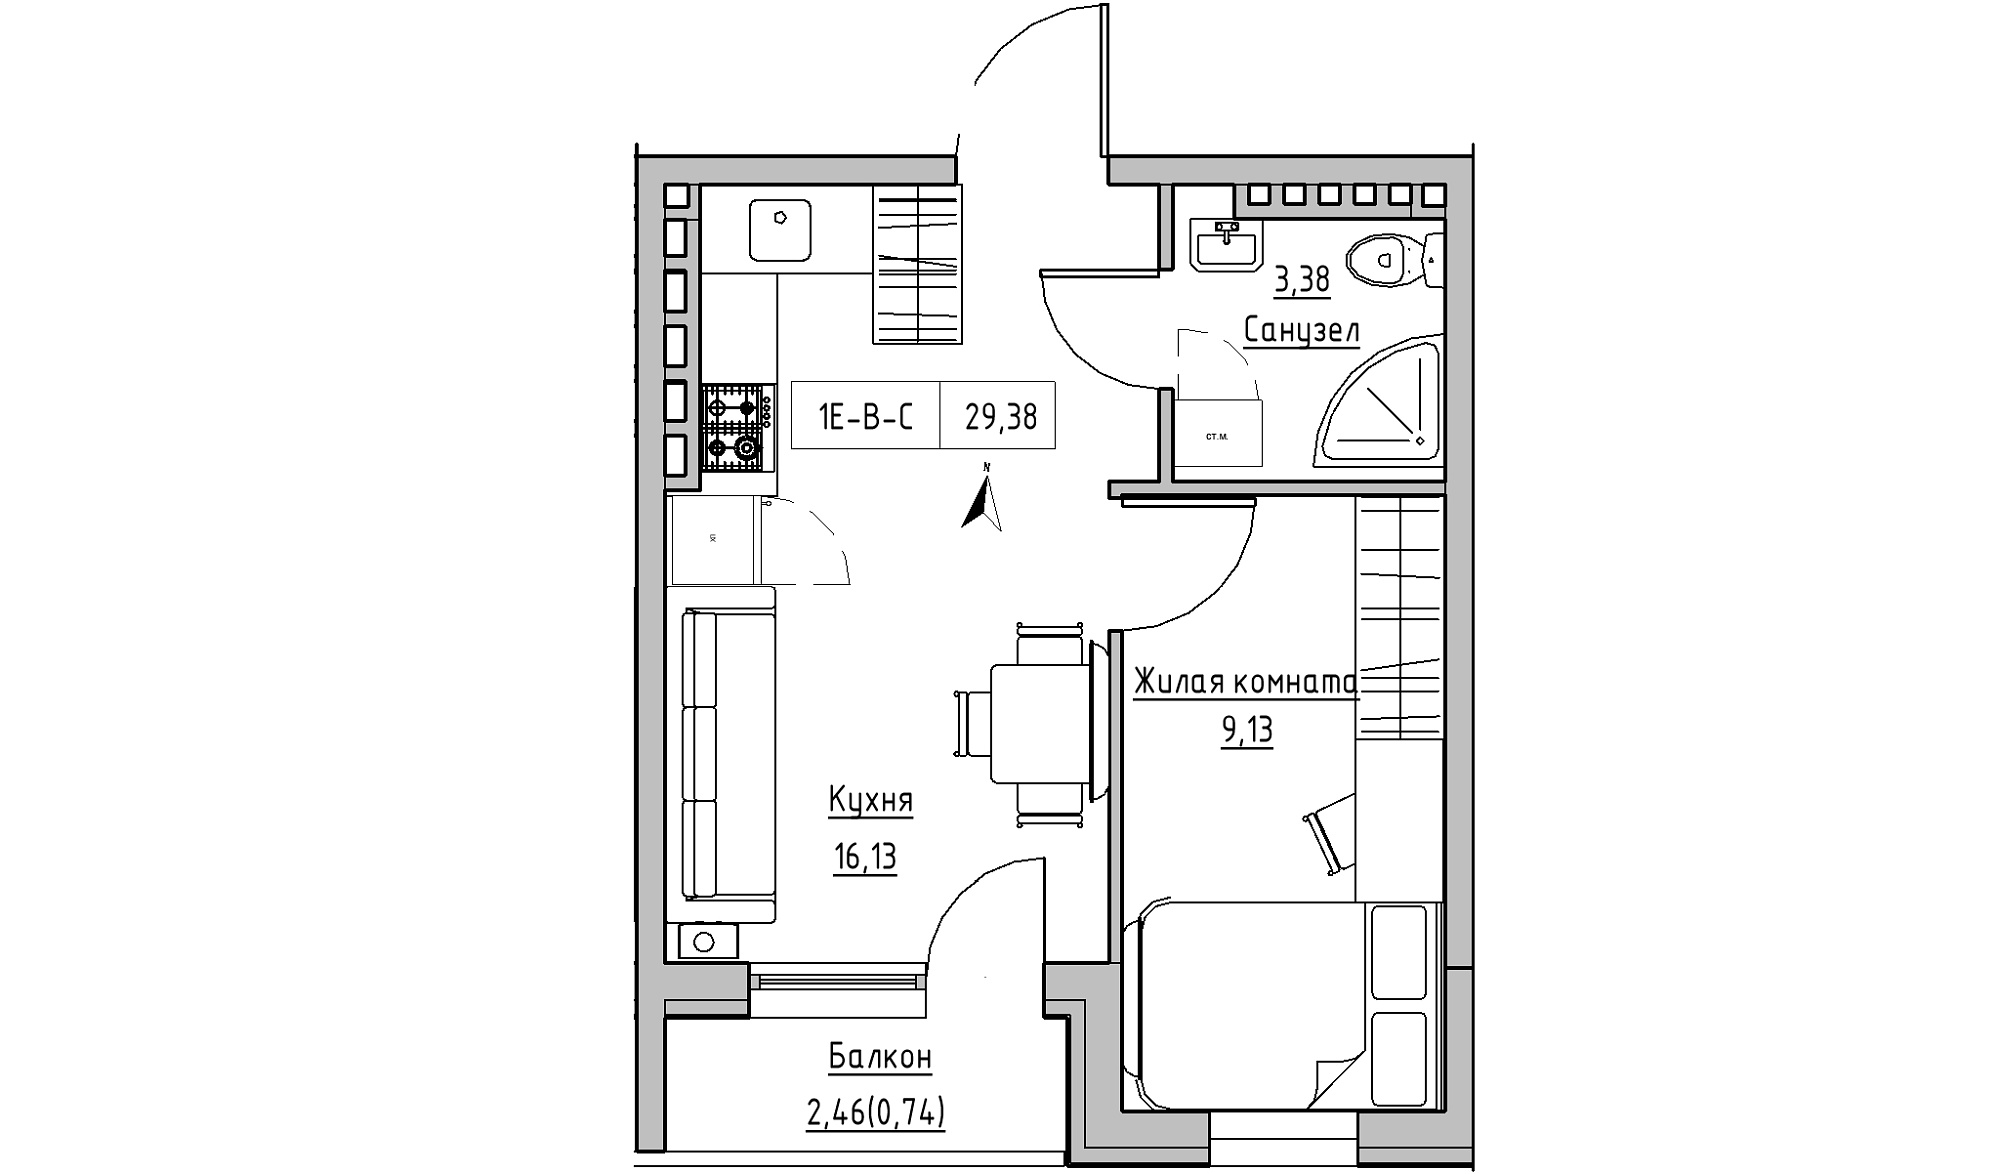 Планировка 1-к квартира площей 29.38м2, KS-024-05/0007.